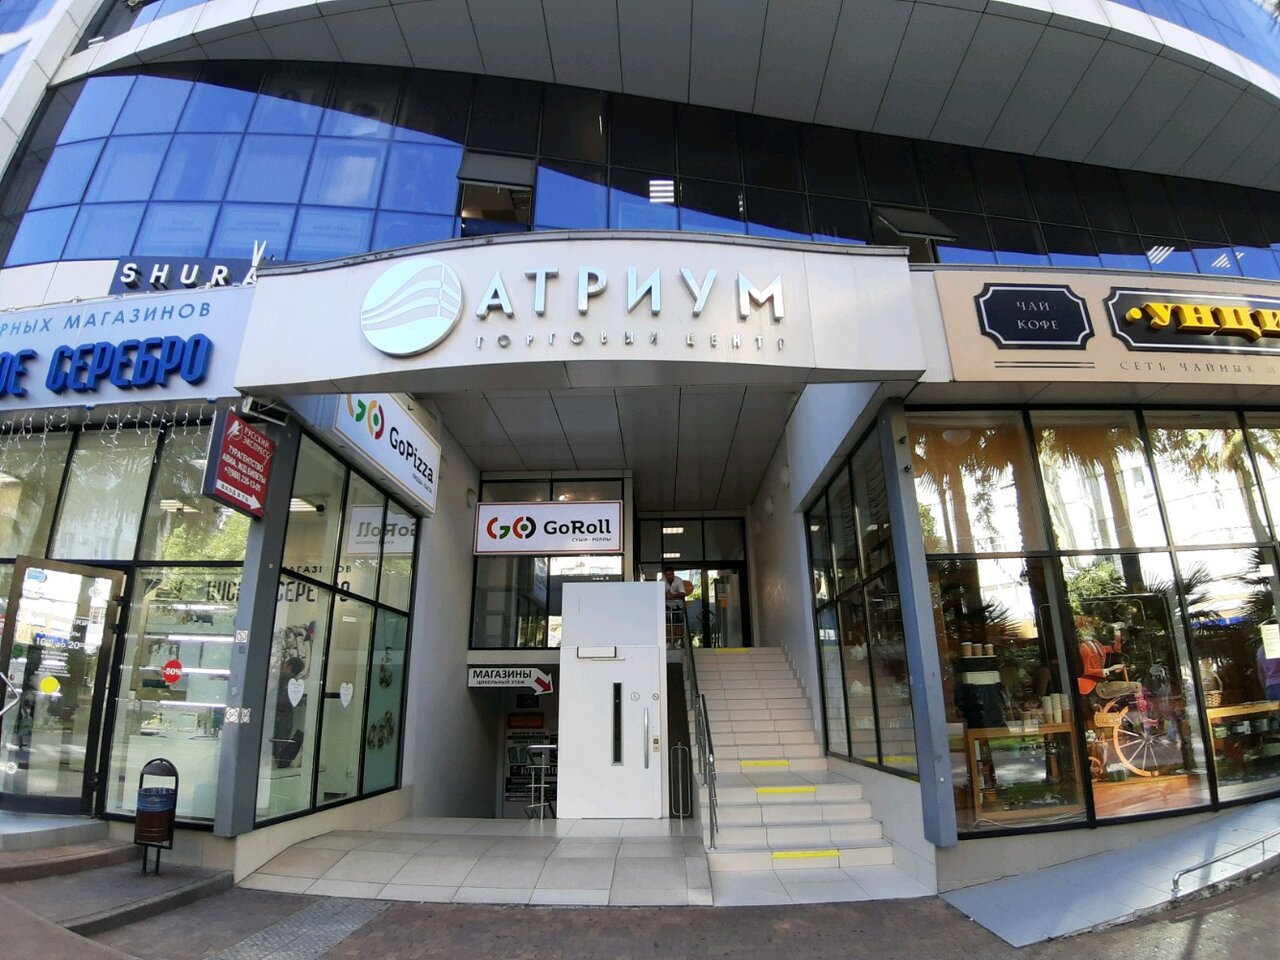 Атриум, торговый центр